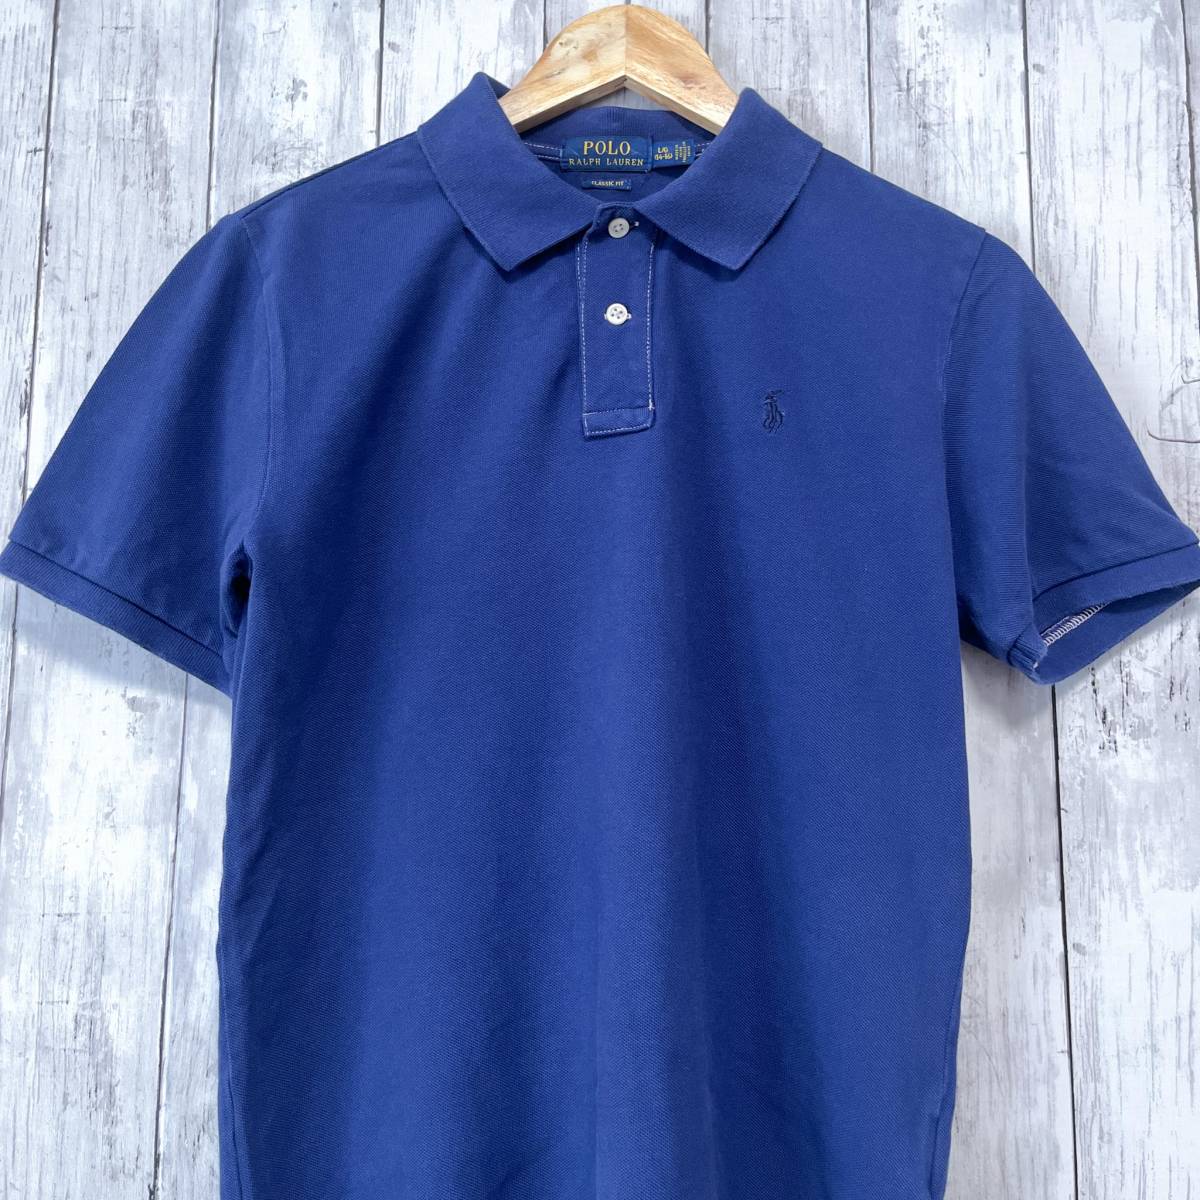 ラルフローレン POLO Ralph Lauren Polo ポロシャツ 半袖シャツ レディース ワンポイント Lサイズ 2-130